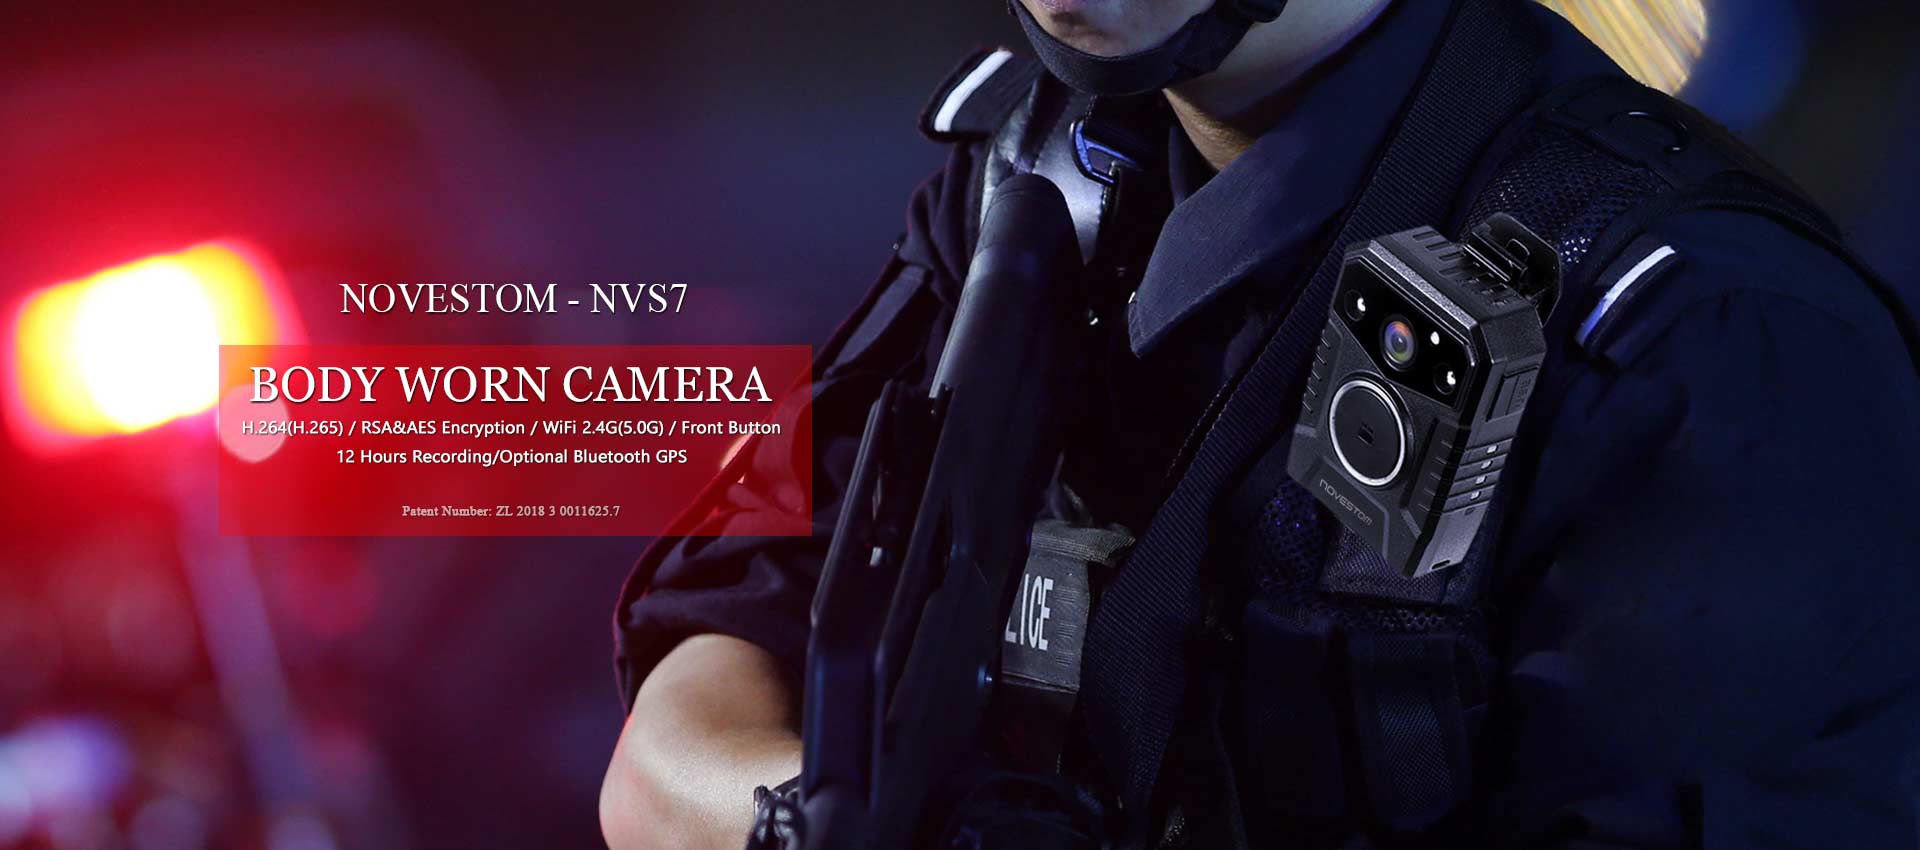 Mwili wa mtindo wa polisi wa NVS7 wifi huvaliwa kamera za usalama za video na GPS AES